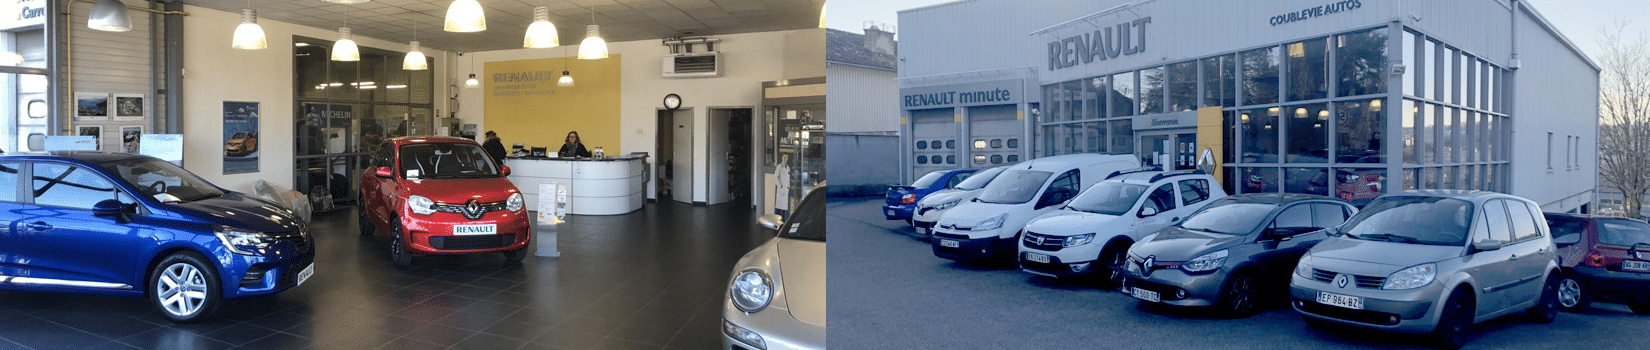 Garage Renault Coublevie